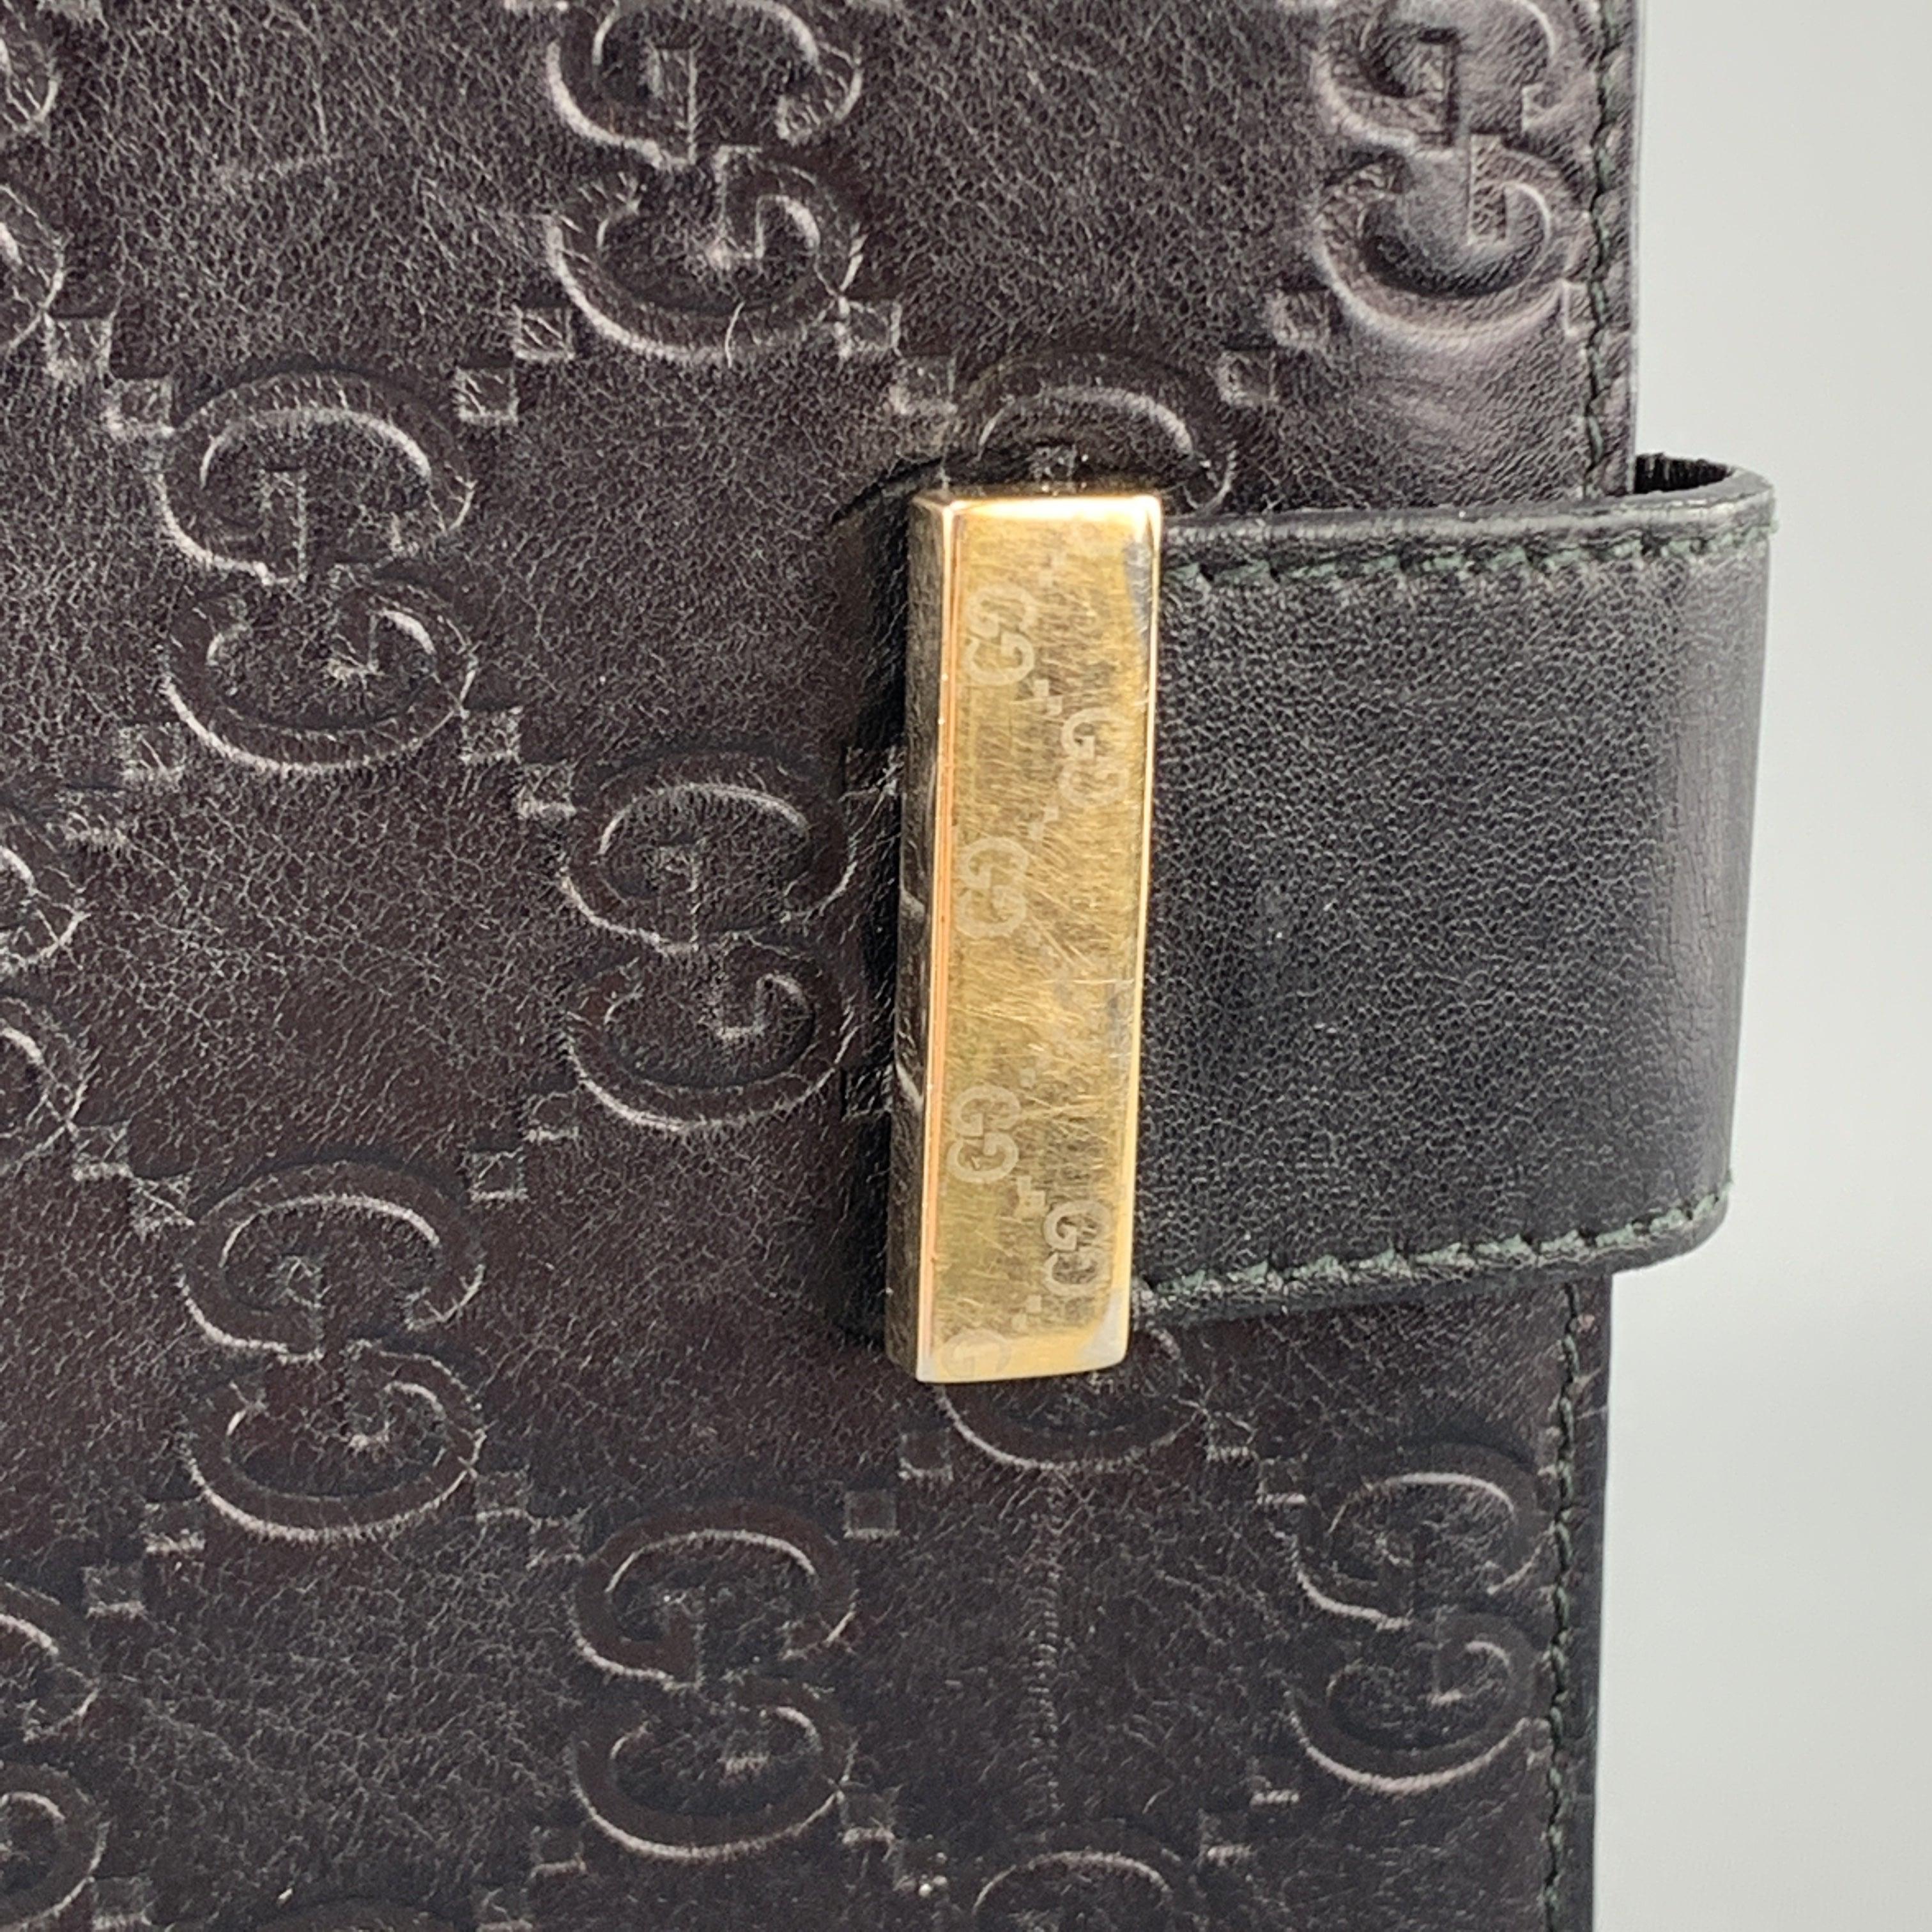 Archiv GUCCI Scheckbuch Brieftasche aus schwarzem Guccissima Leder mit Monogramm-Prägung, mit einer Klappentasche auf der Rückseite, einer Klappe auf der Vorderseite mit goldfarbenem Druckknopfverschluss und einem Innenfach. Der Schnapper ist lose.